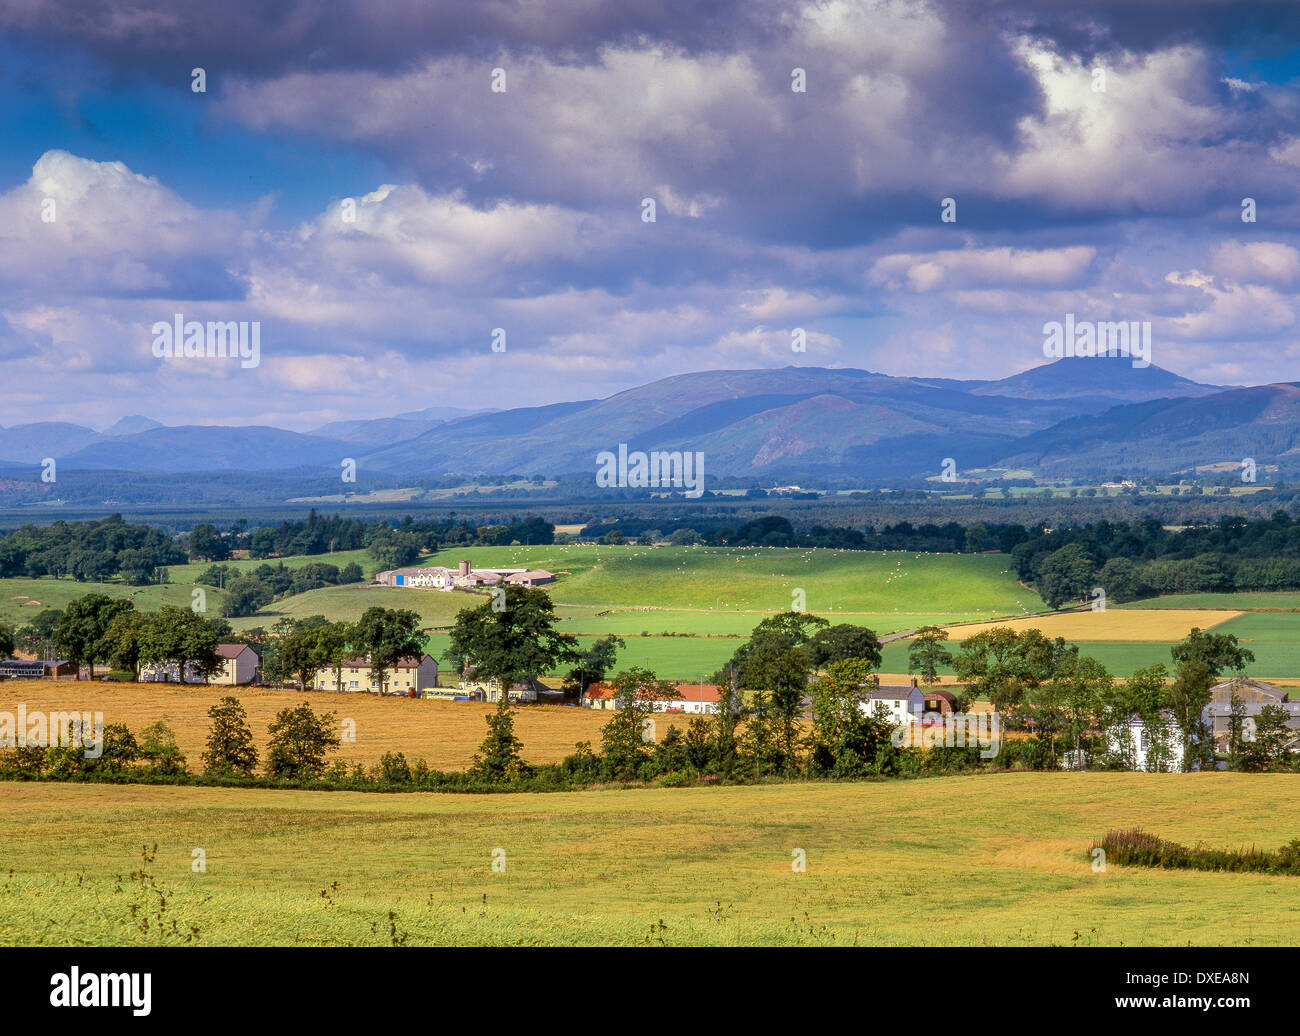 Arnprior Village, Stirling & Trossachs Region. Scotland Stock Photo